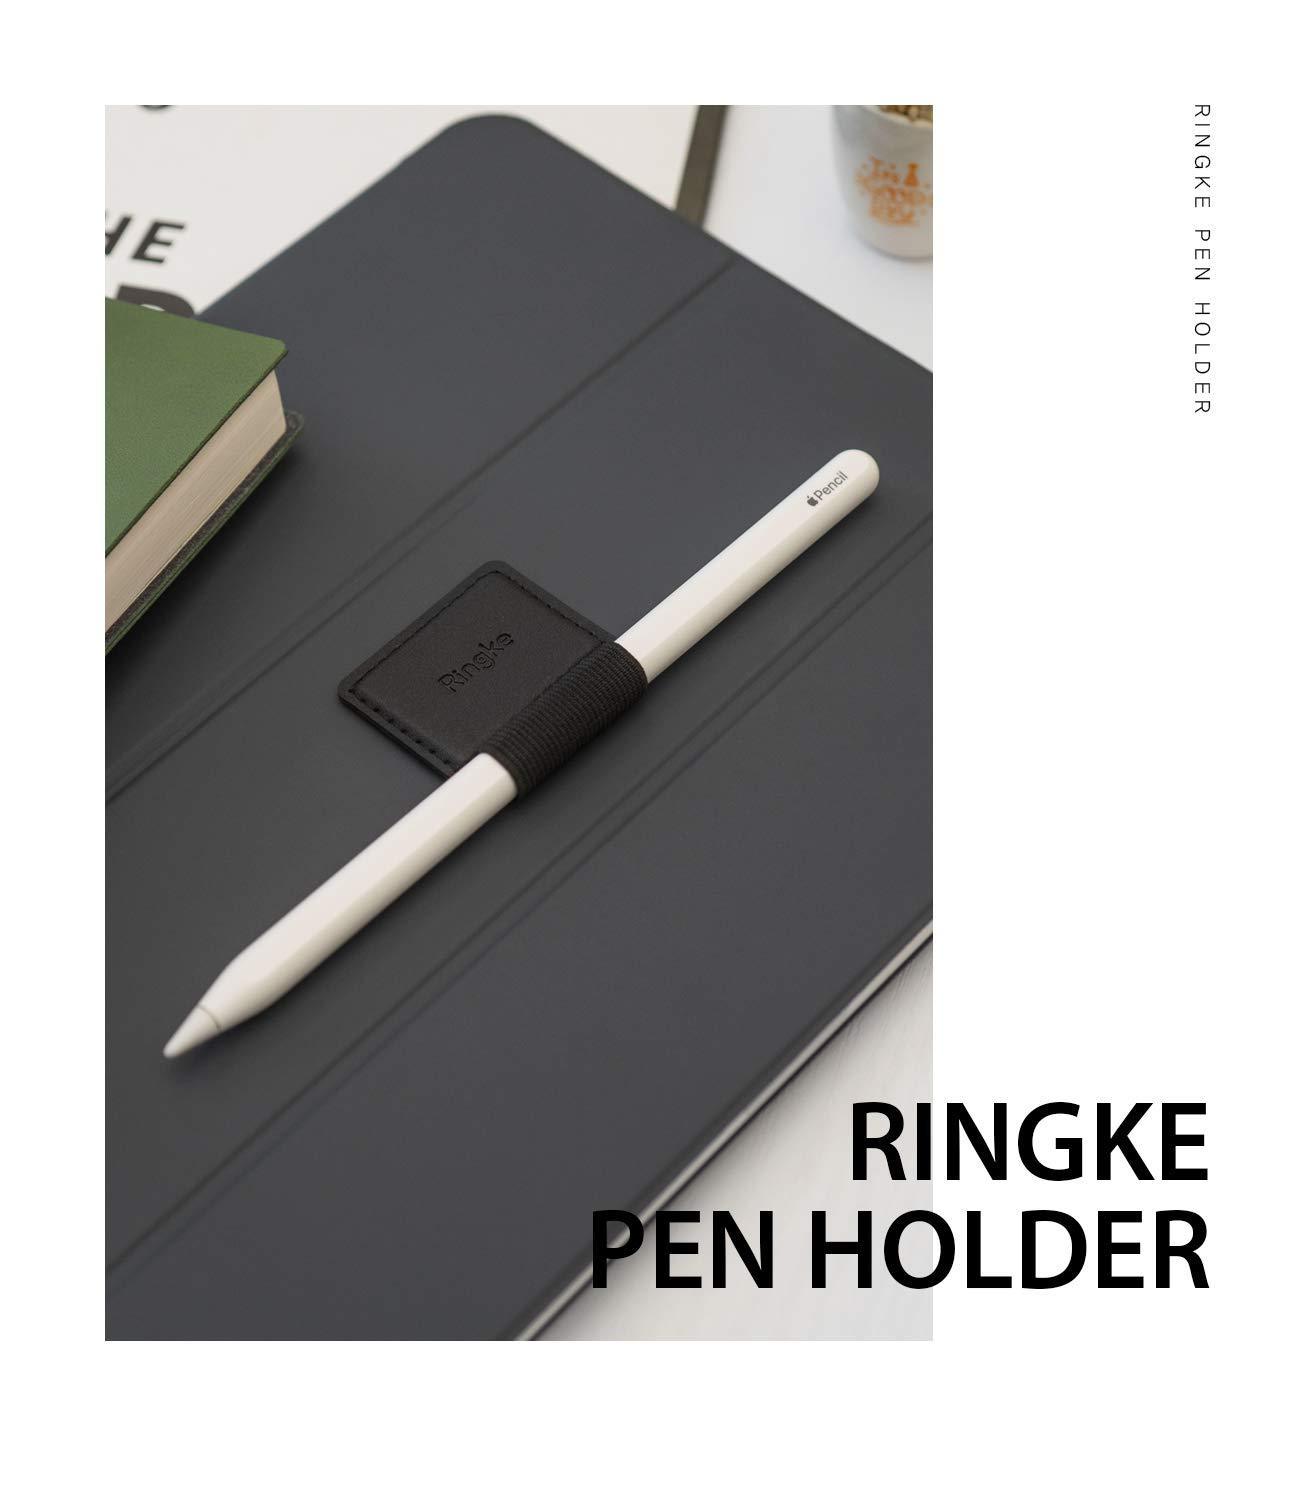 Ringke Pen Holder(2 Pack), Black Pen Holder Ringke Black 